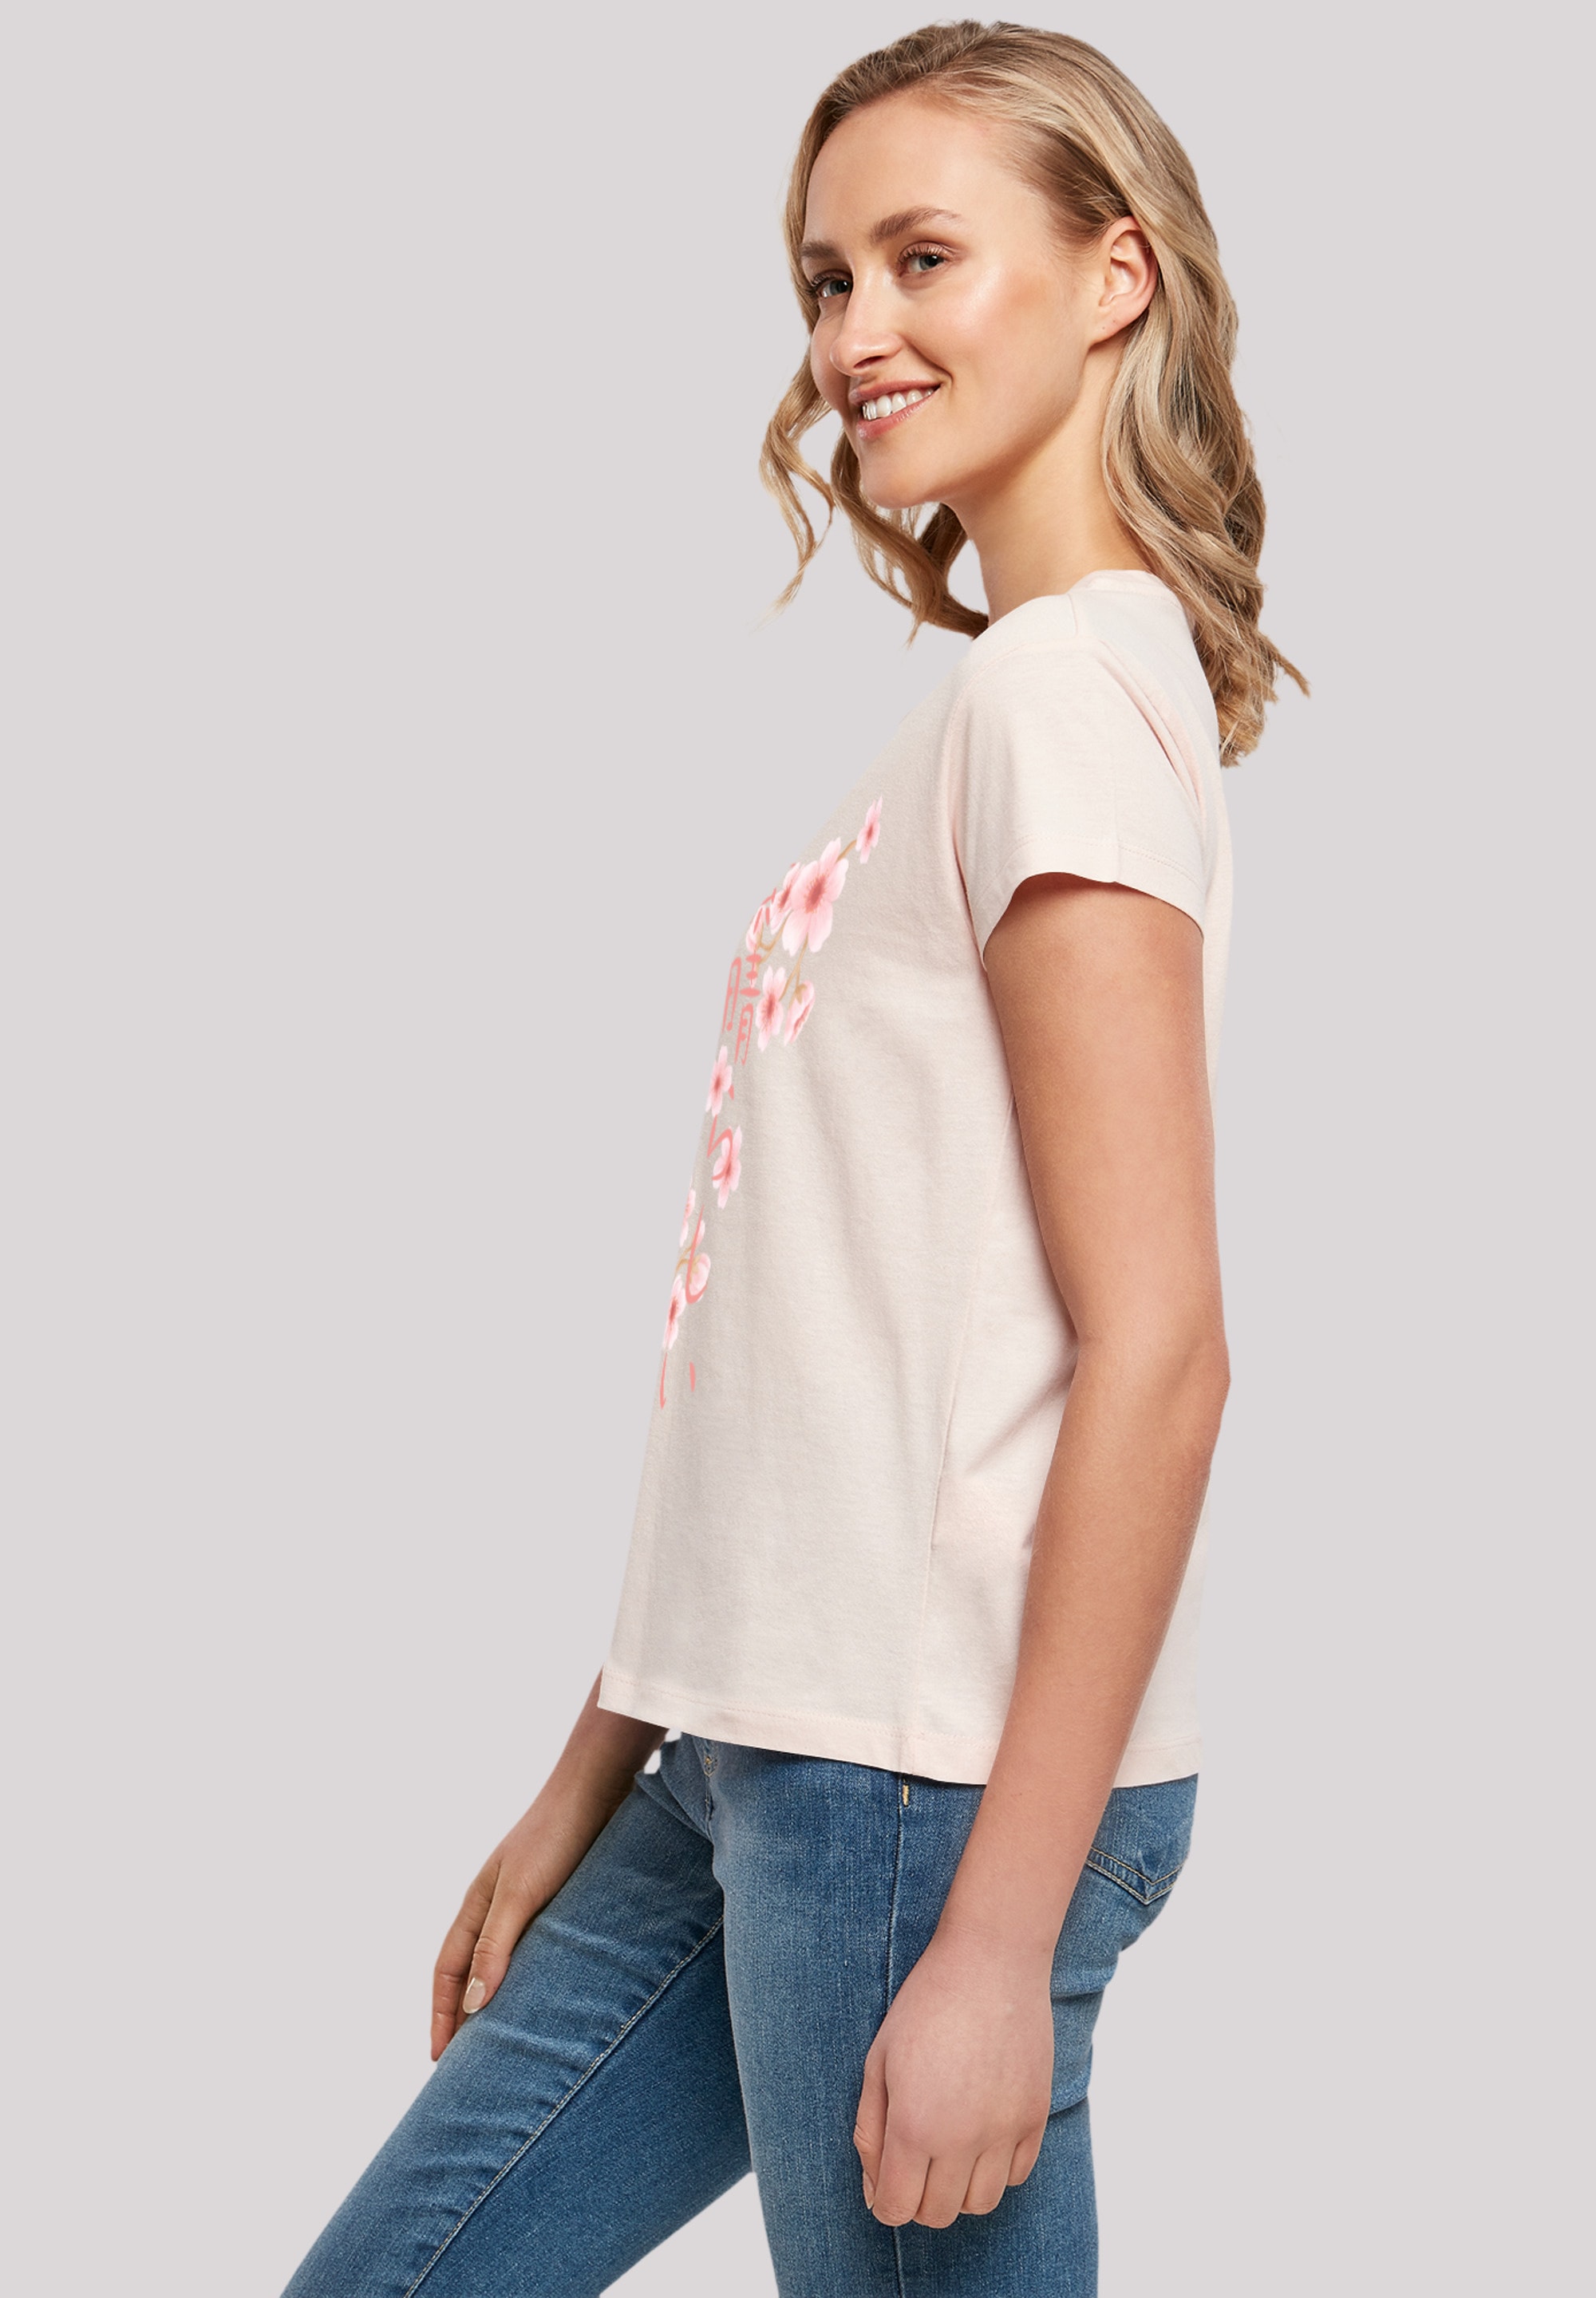 F4NT4STIC T-Shirt »Kirschblüten«, Print